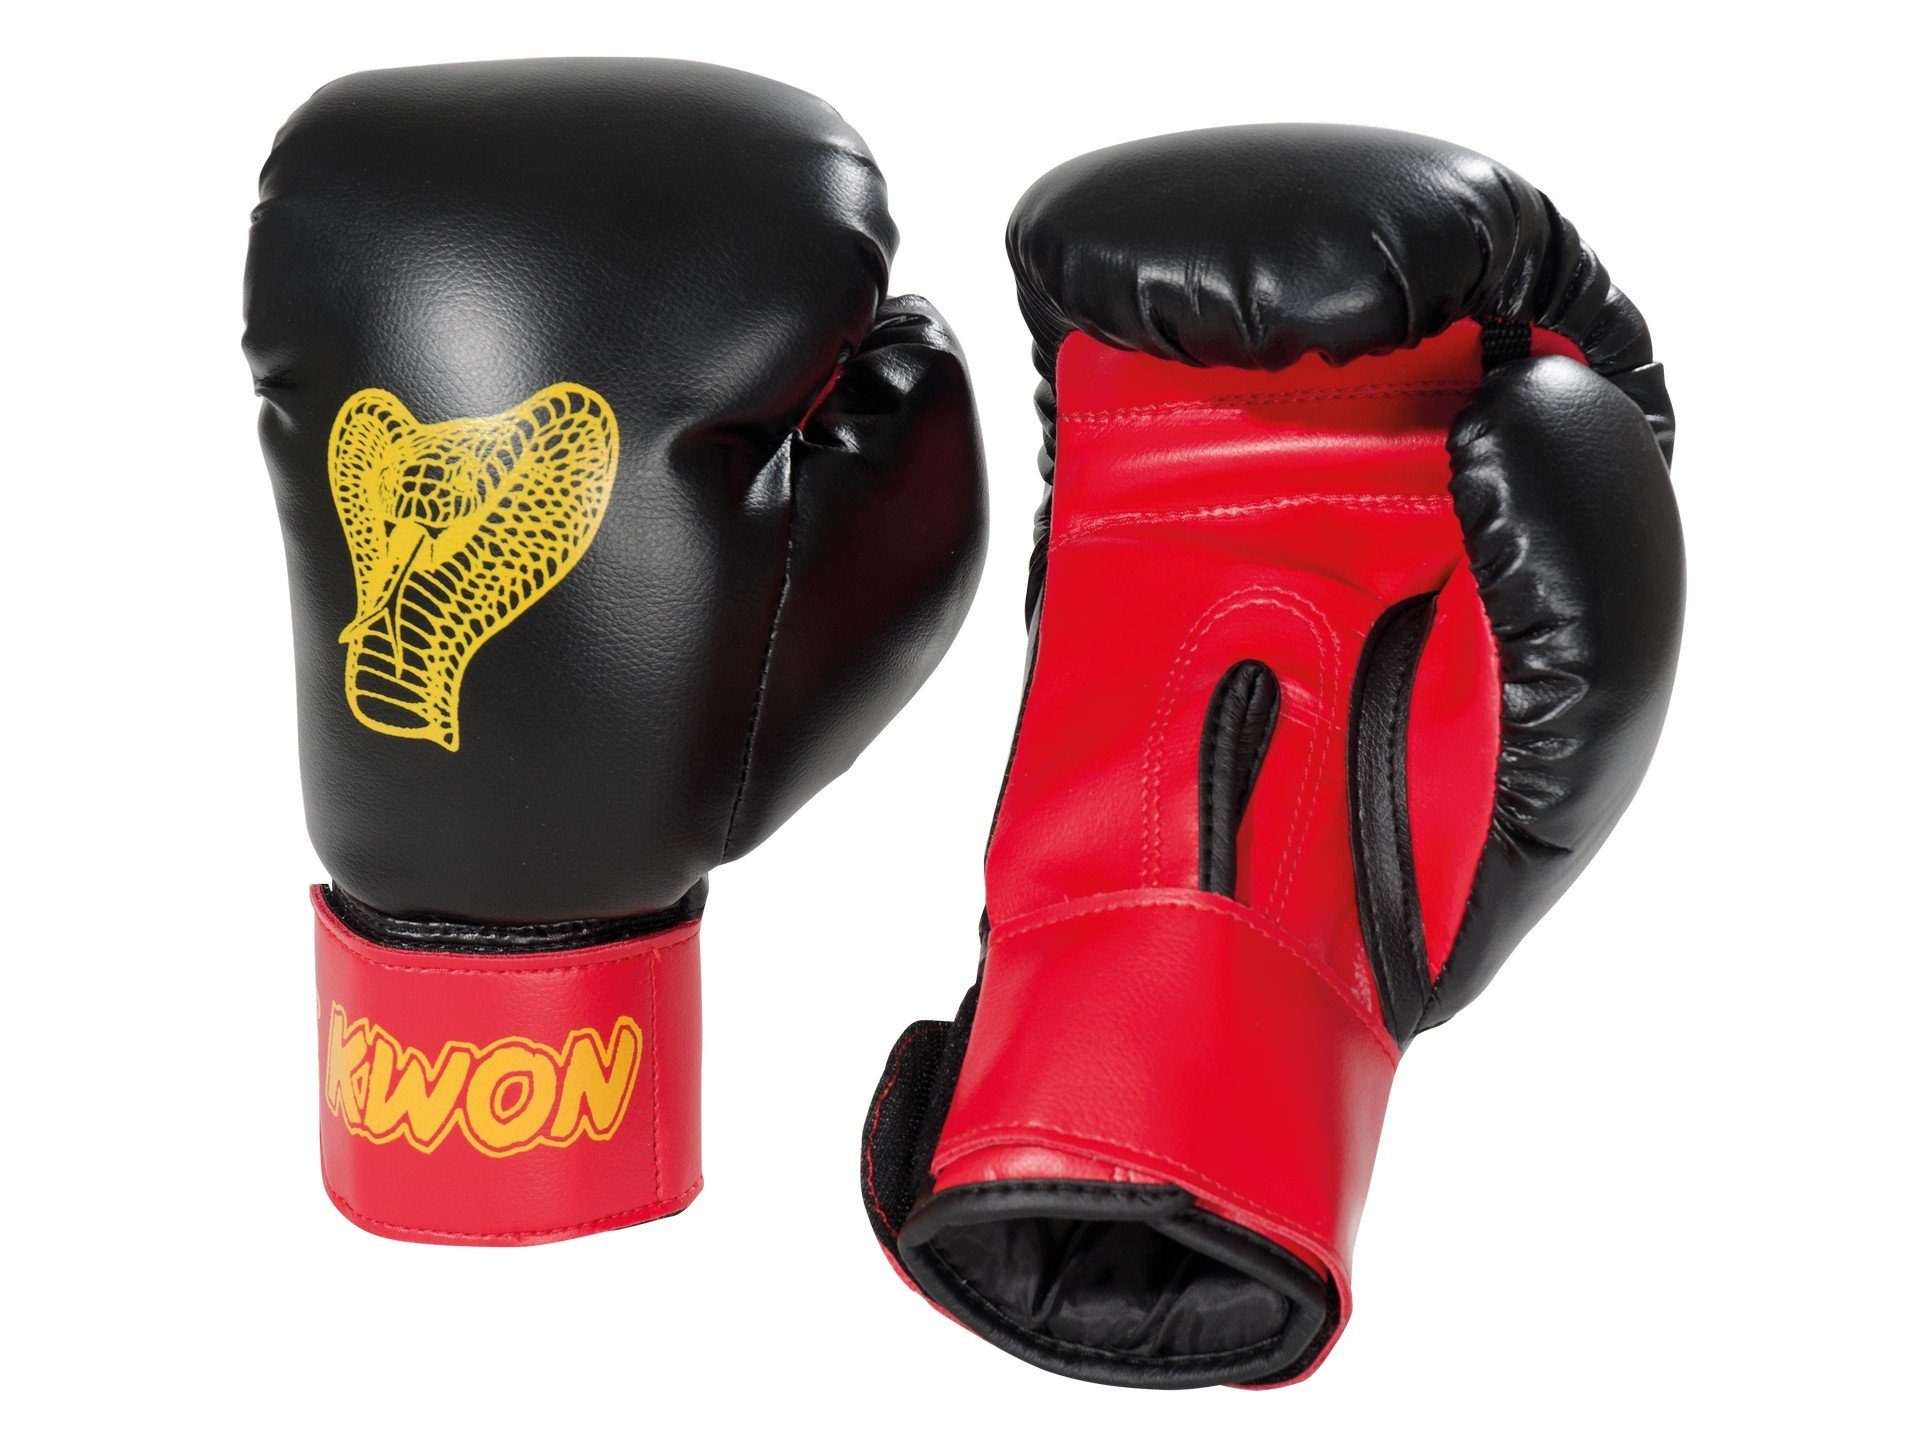 KWON Boxhandschuhe Cobra Kinder Junior Box-Handschuhe 6 Unzen Kids klein Boxen Kickboxen (Paar), 6 Unzen, Einsteiger, Boxen und Schlagtraining am Sandsack/Pratze schwarz